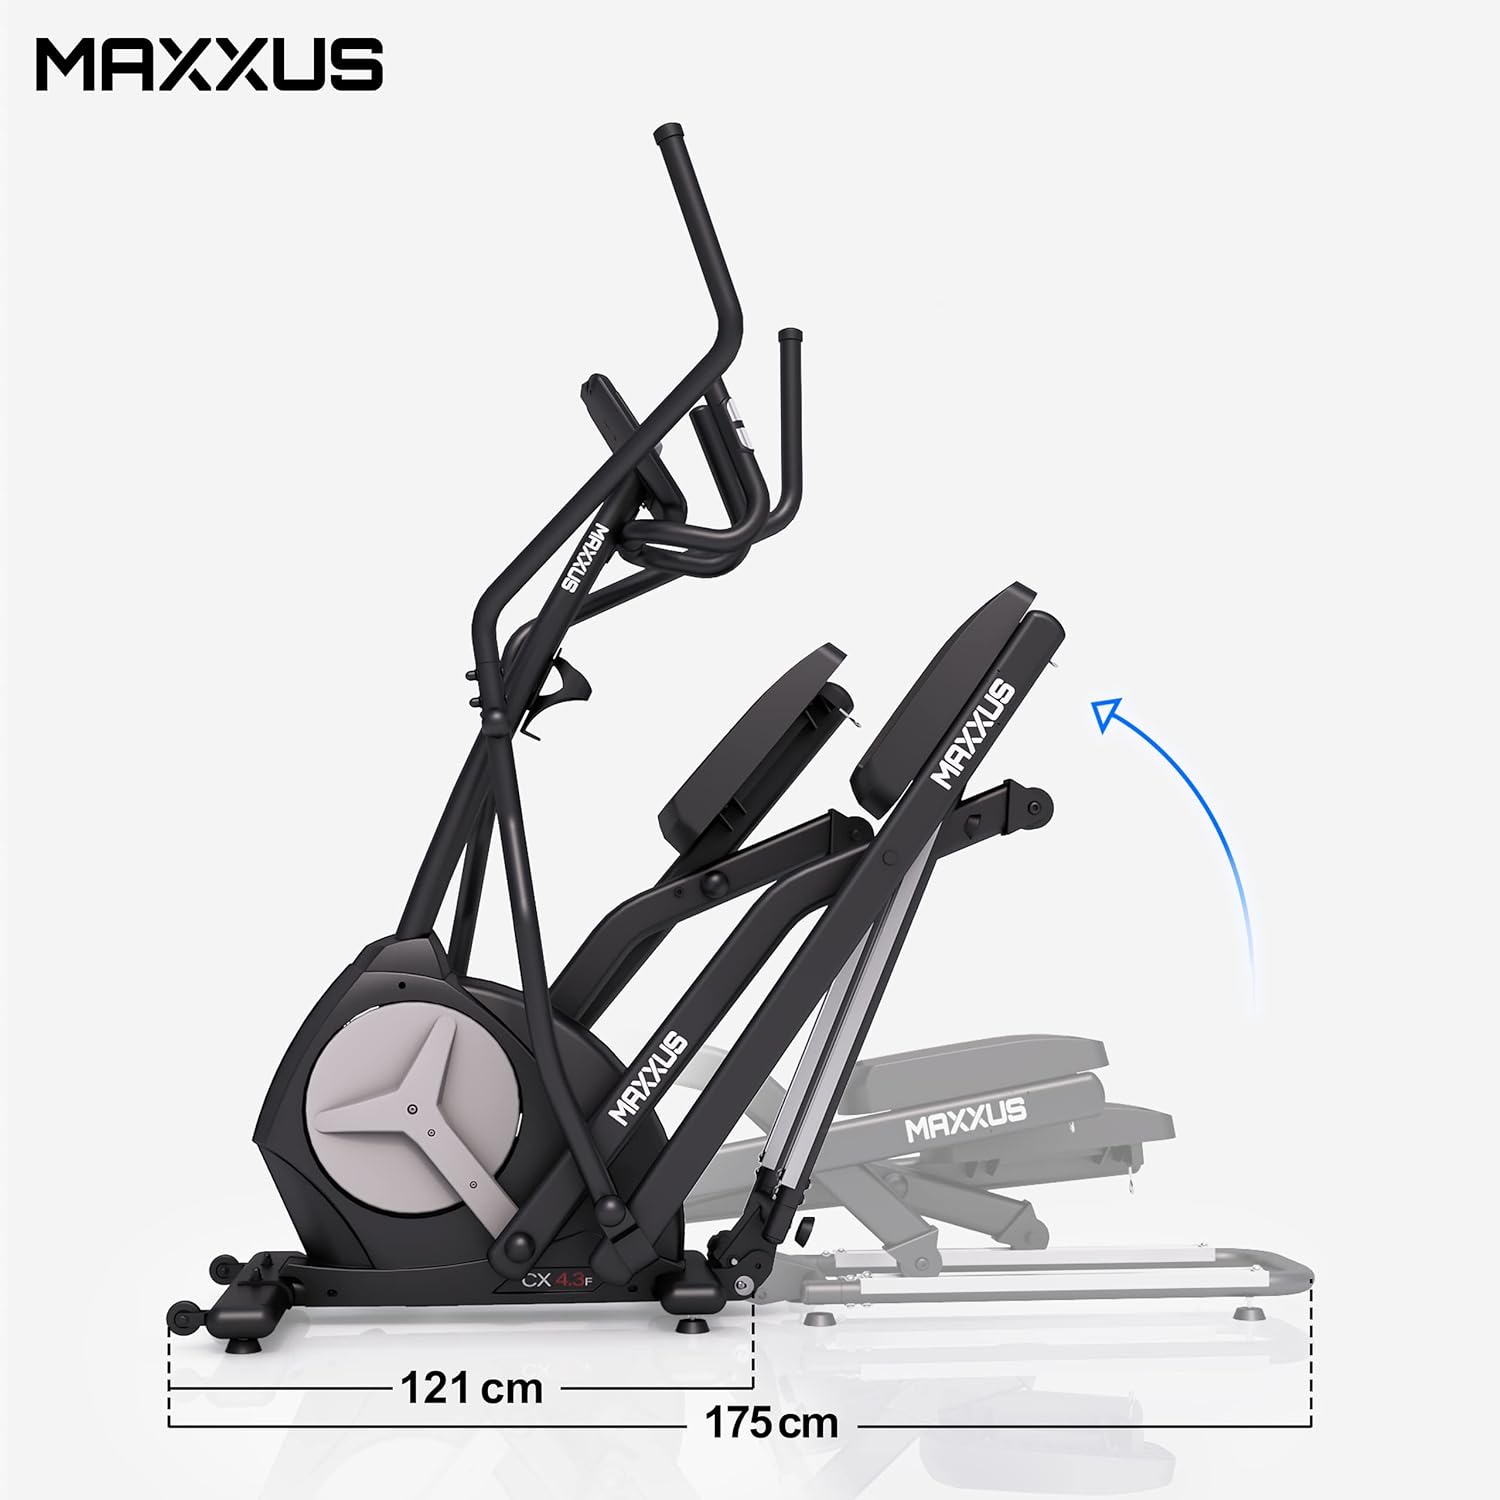 Maxxus Crosstrainer klappbar